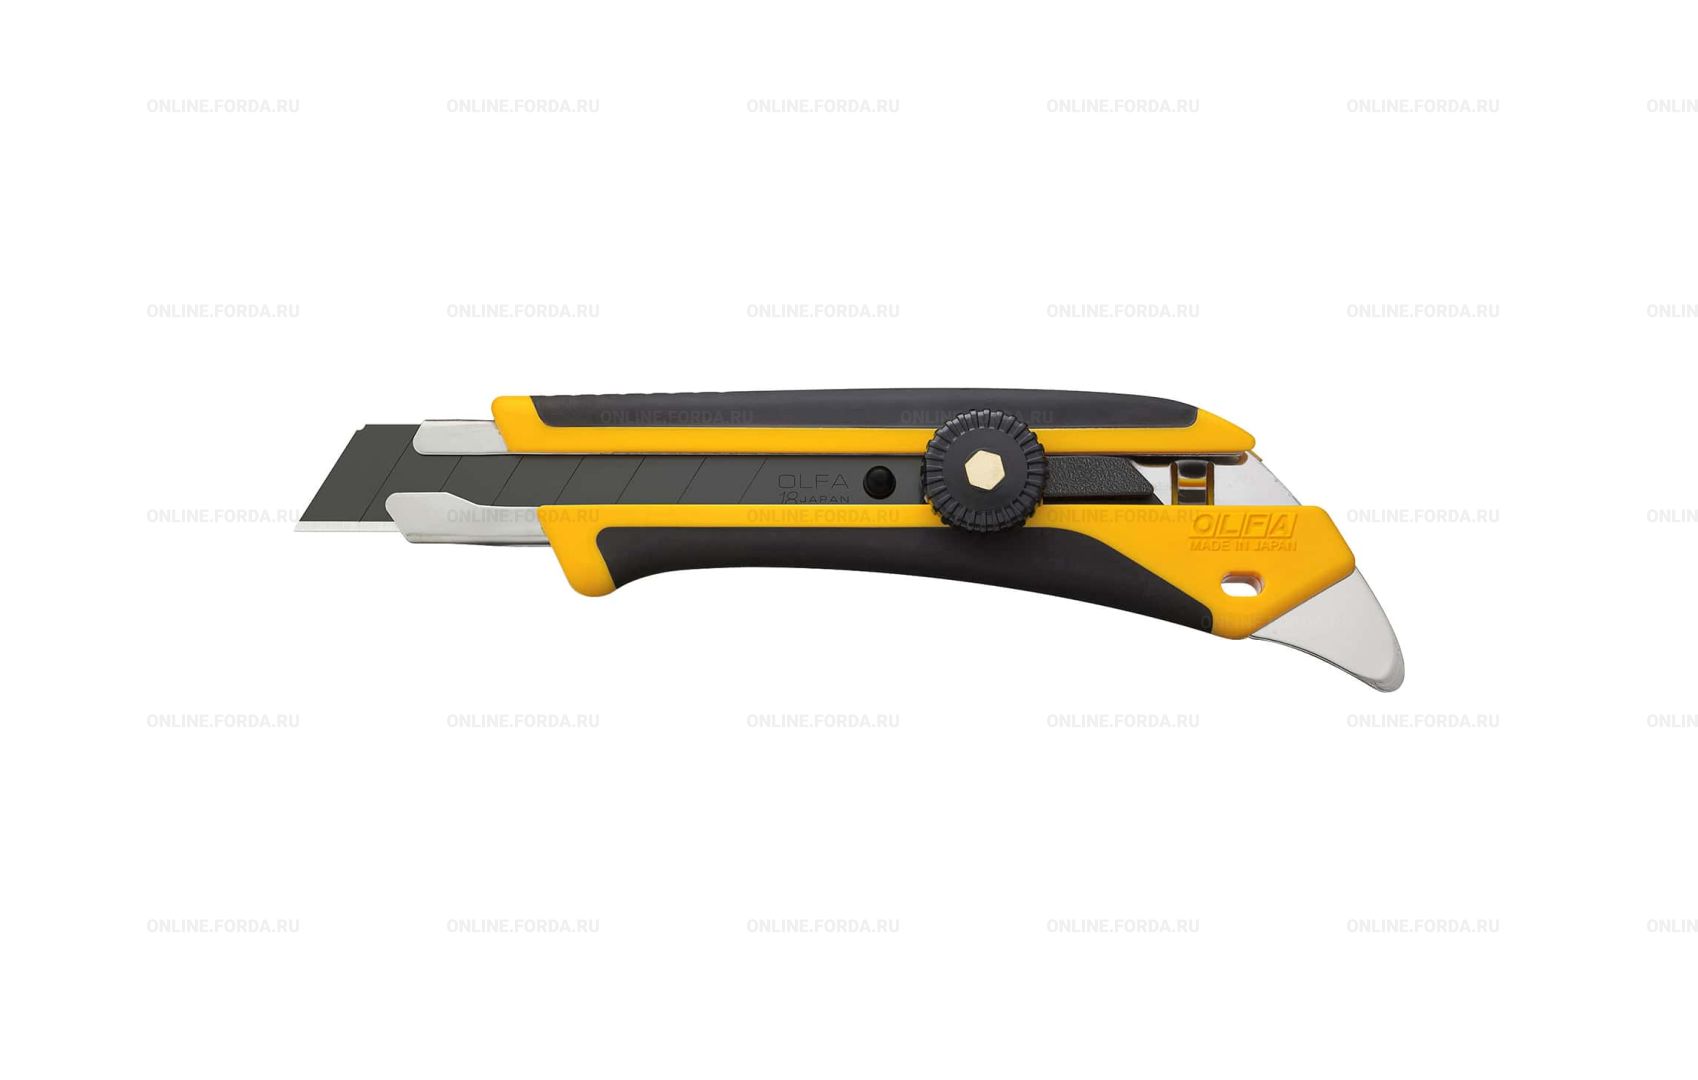 Нож OLFA желто-черного цвета с выдвижным лезвием, вид спереди